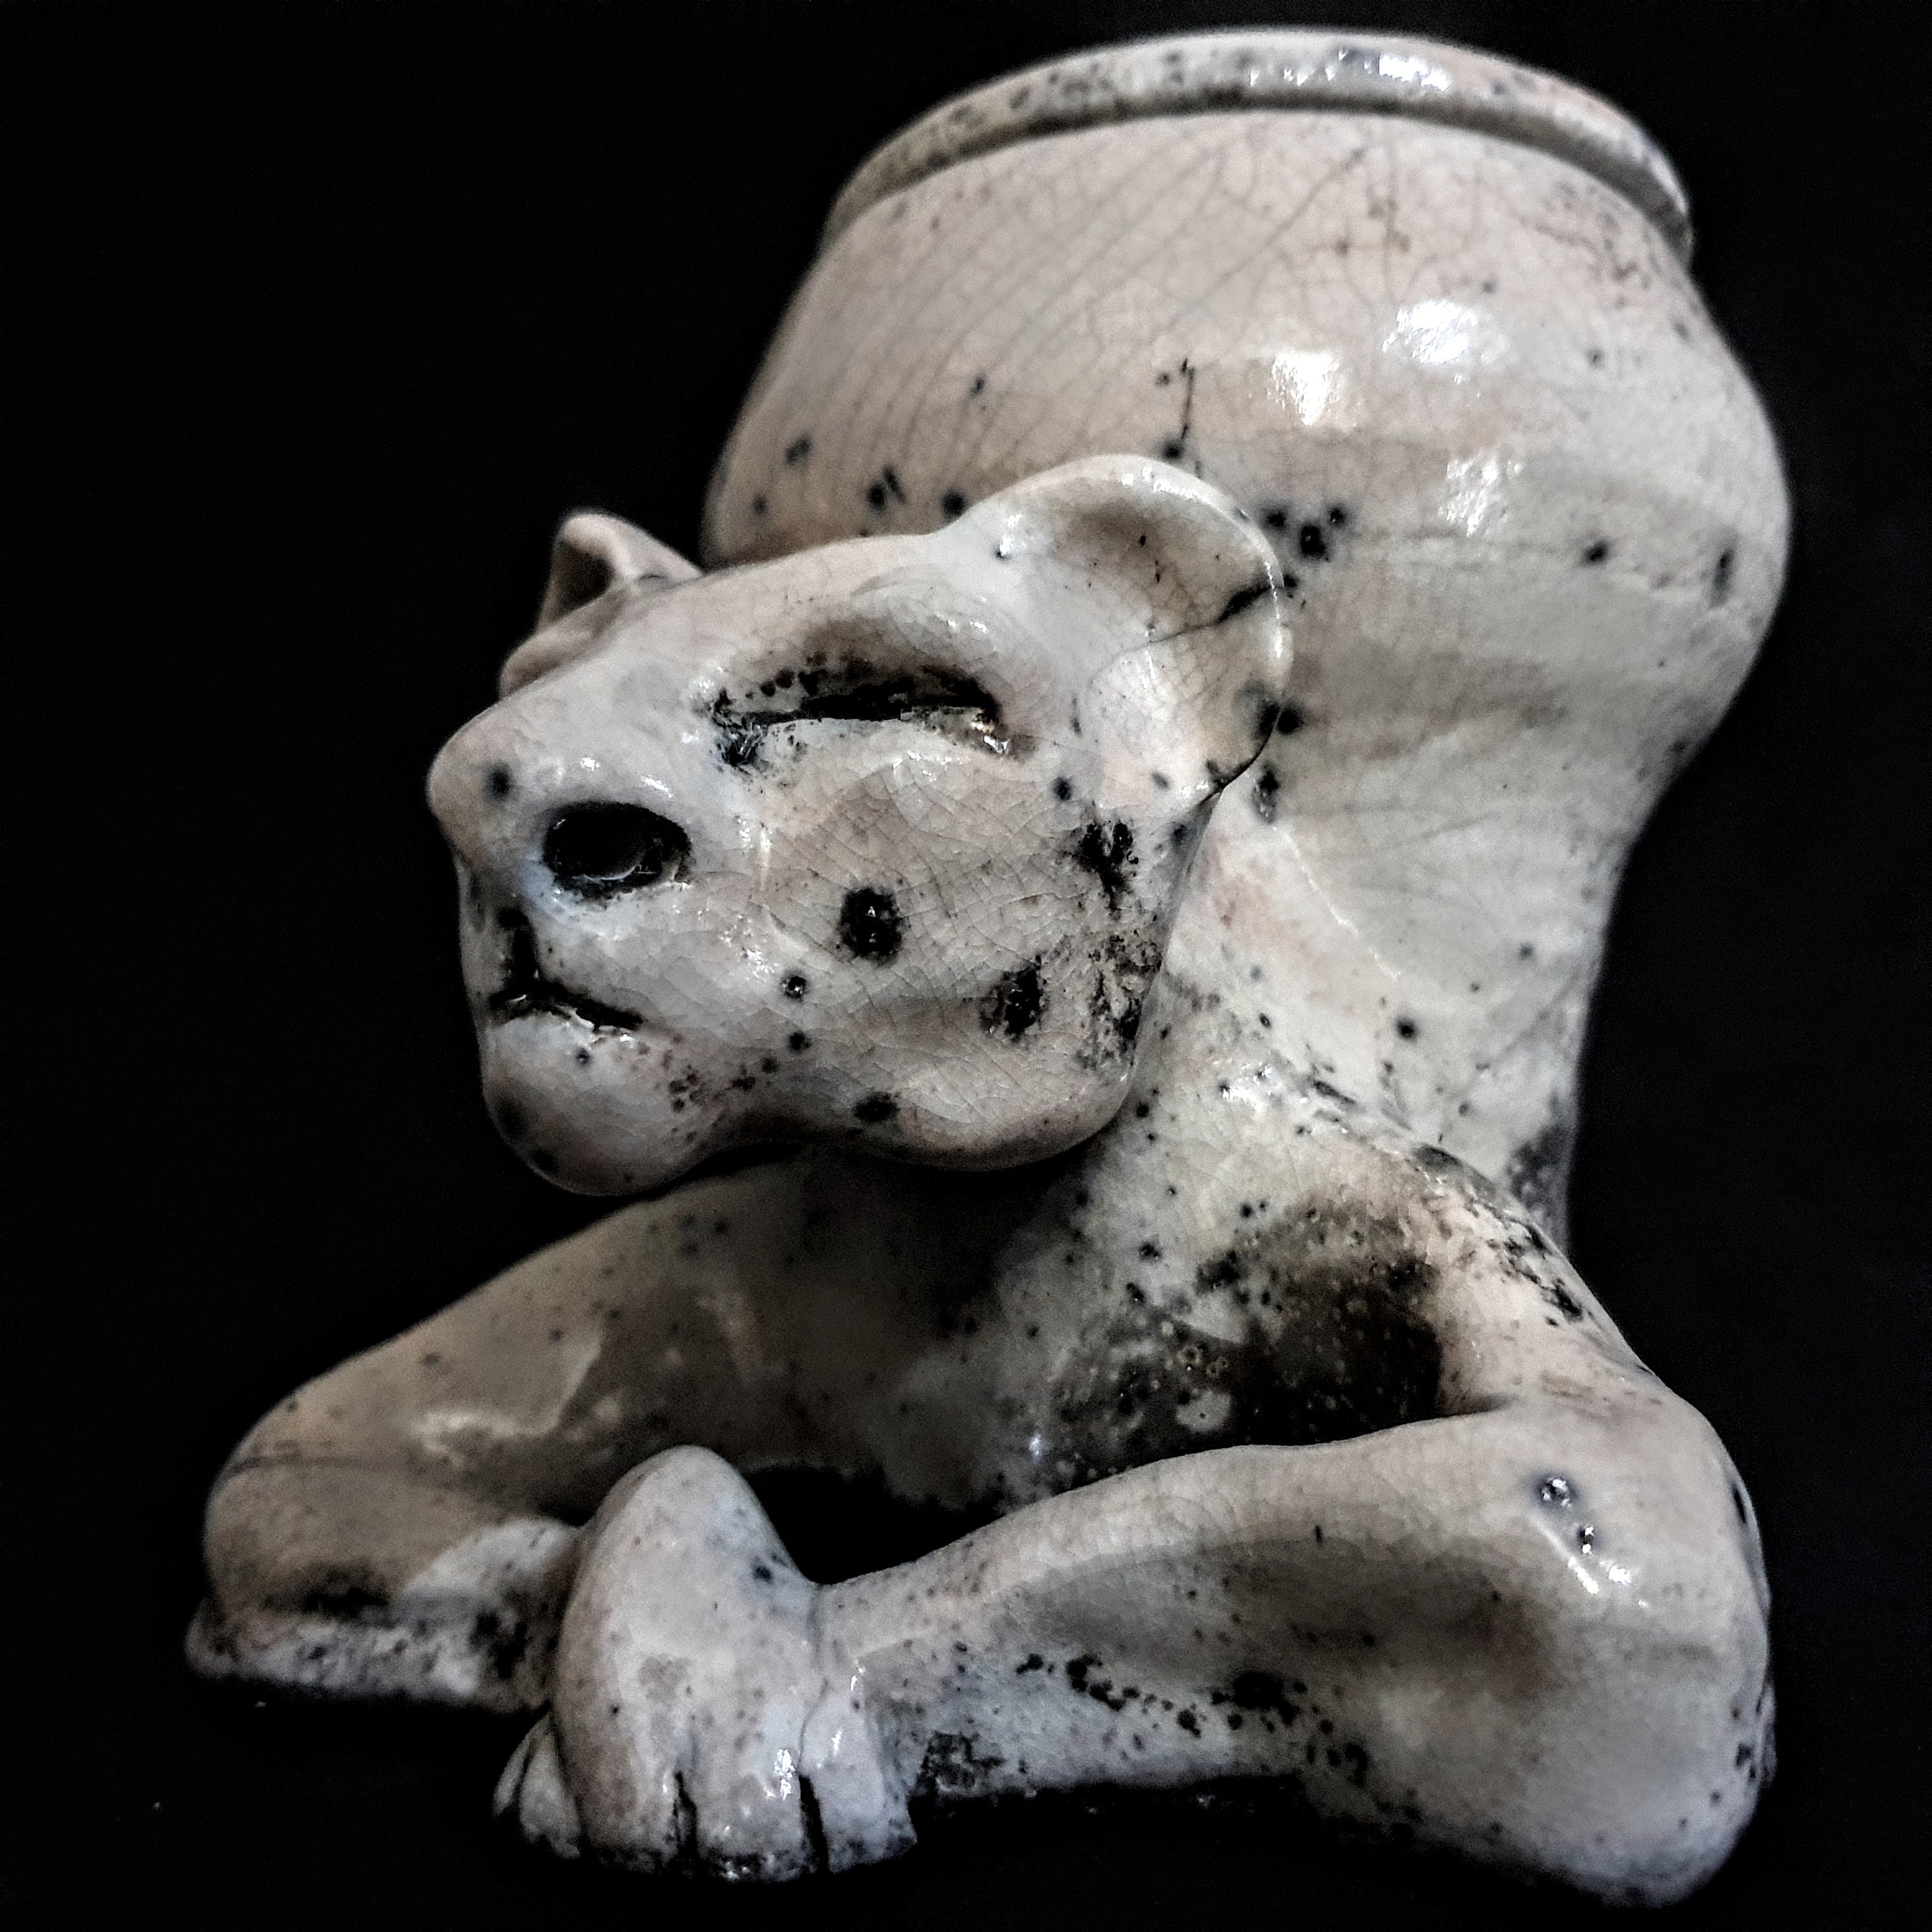 Lioness Figurine Urn | Cremation Urn For Human Or Pet Ashes | Unique Urn for Pets | Keepsake for Ashes | Artistic Keepsakes | Wabi Sabi Urn